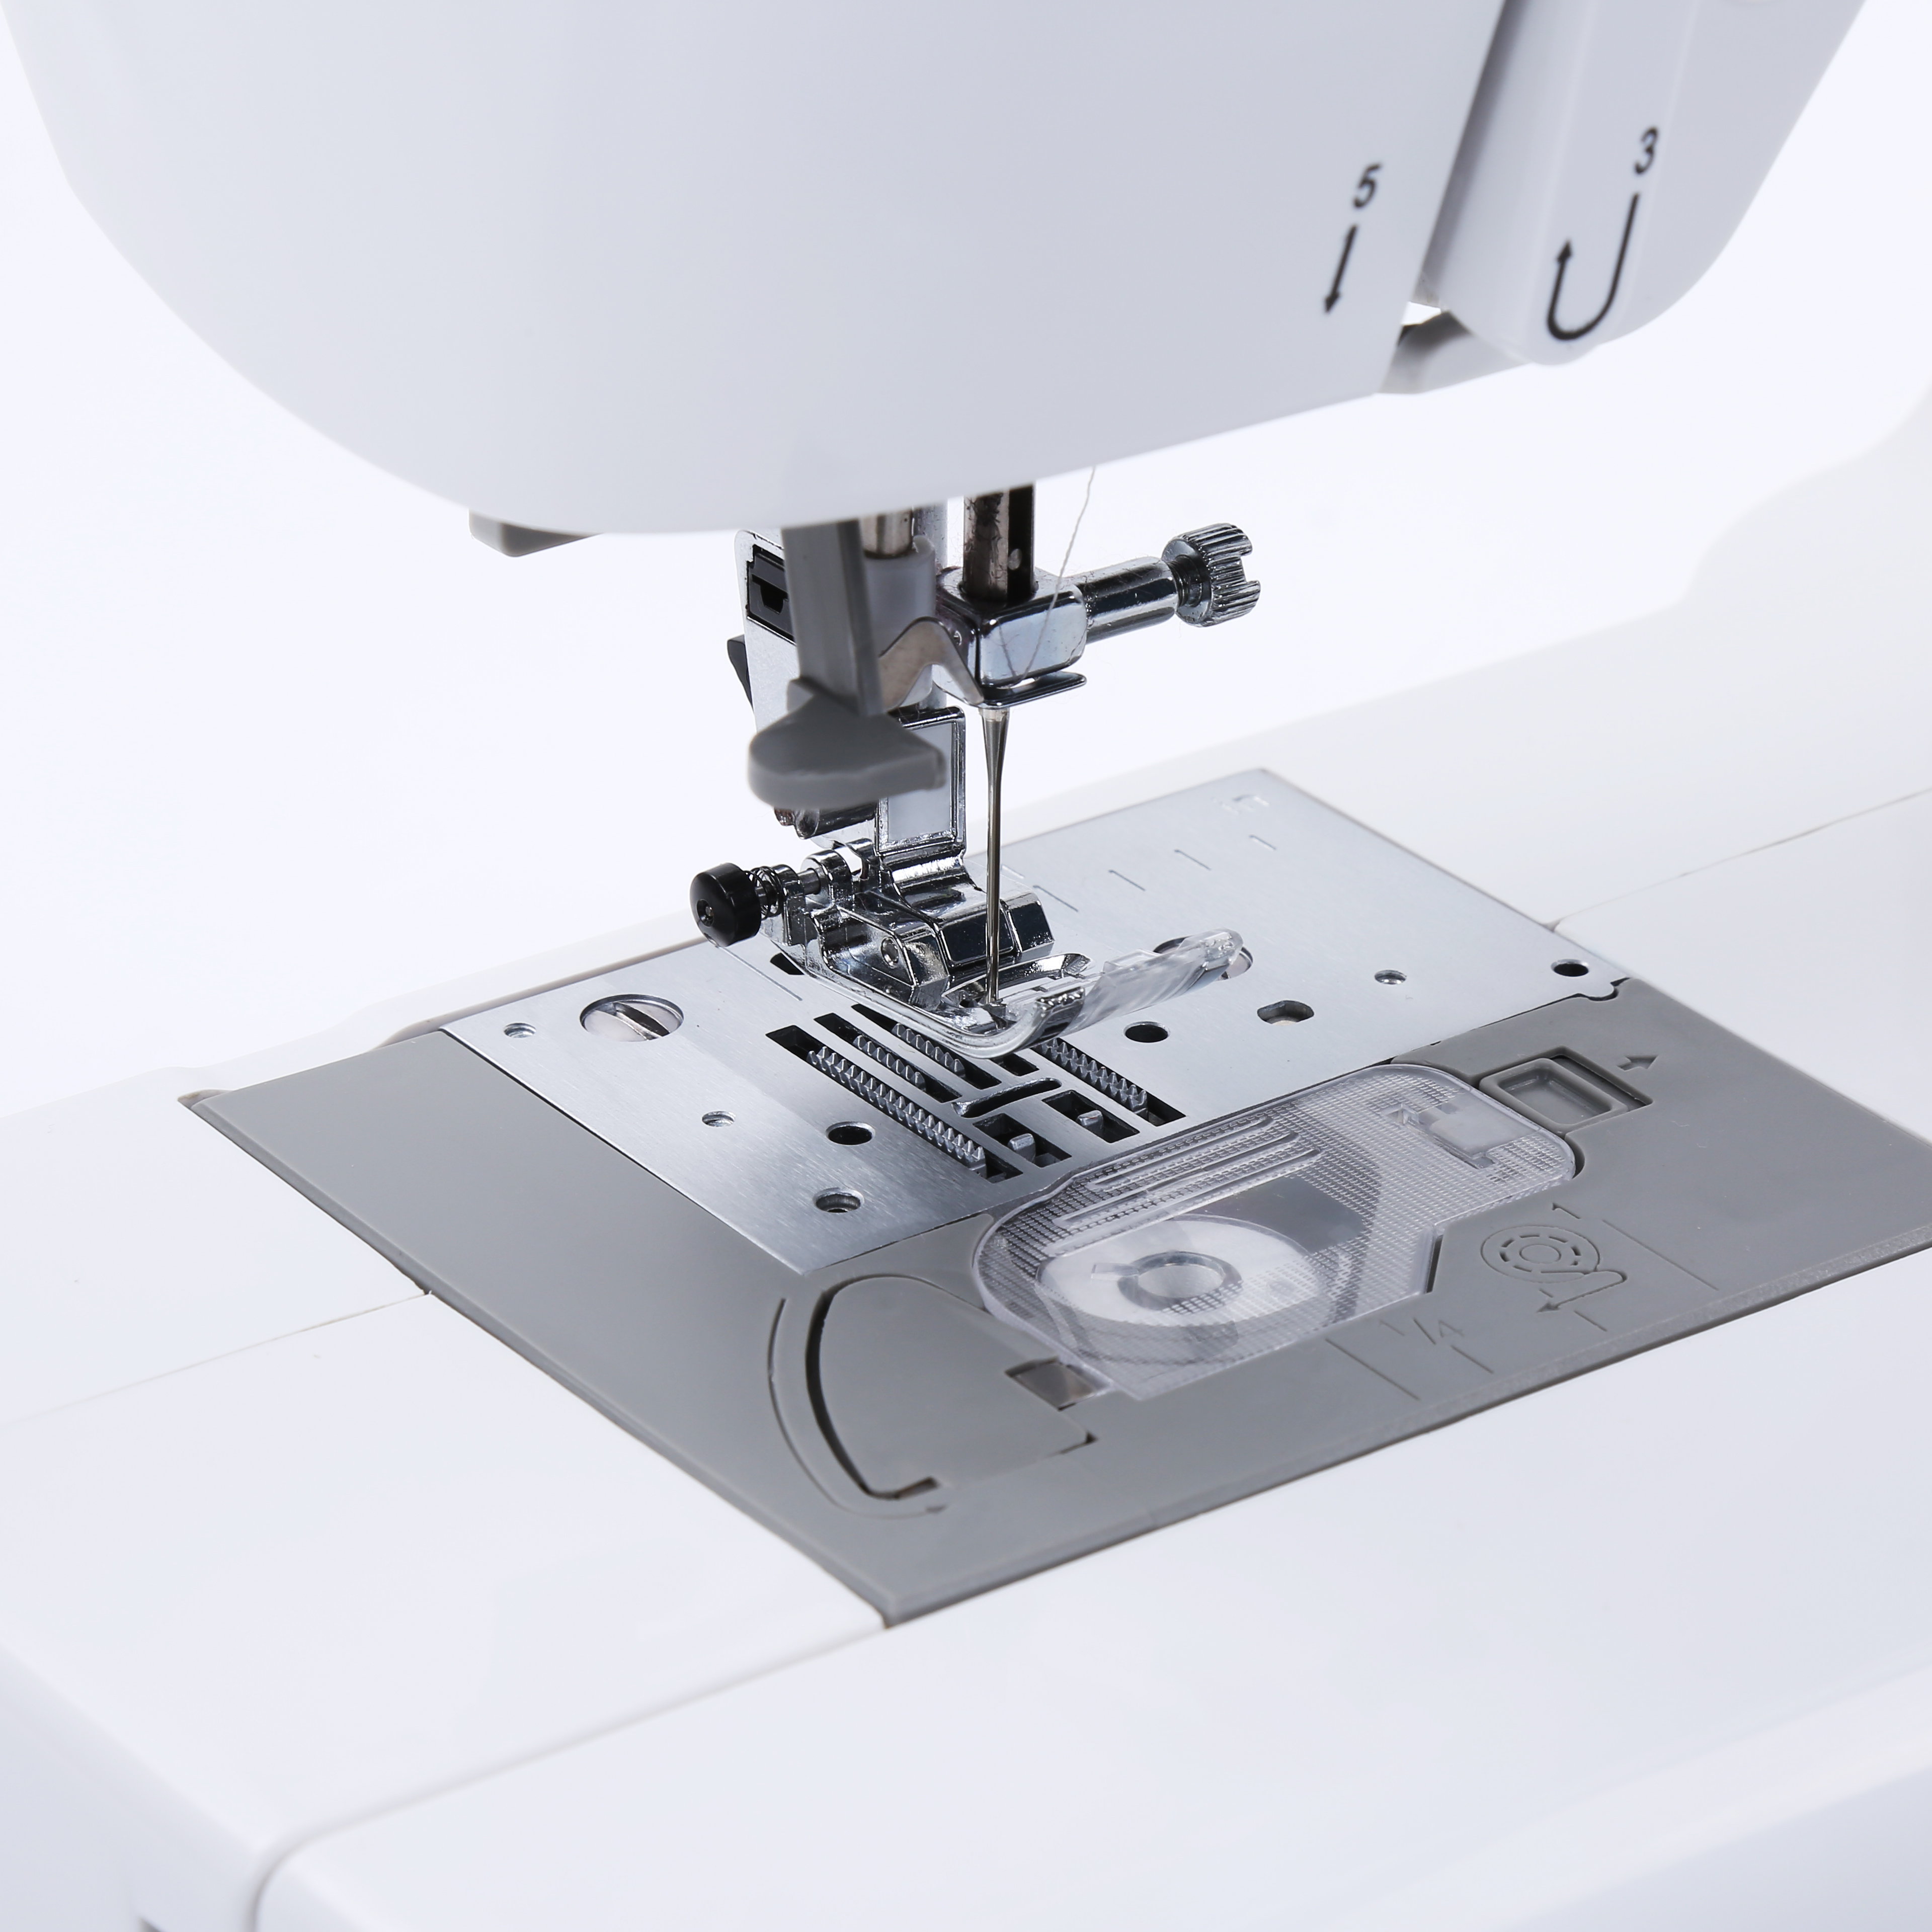 باي قطع غيار آلات الخياطة في اليابان للمجلد الموثق لآلات الخياطة